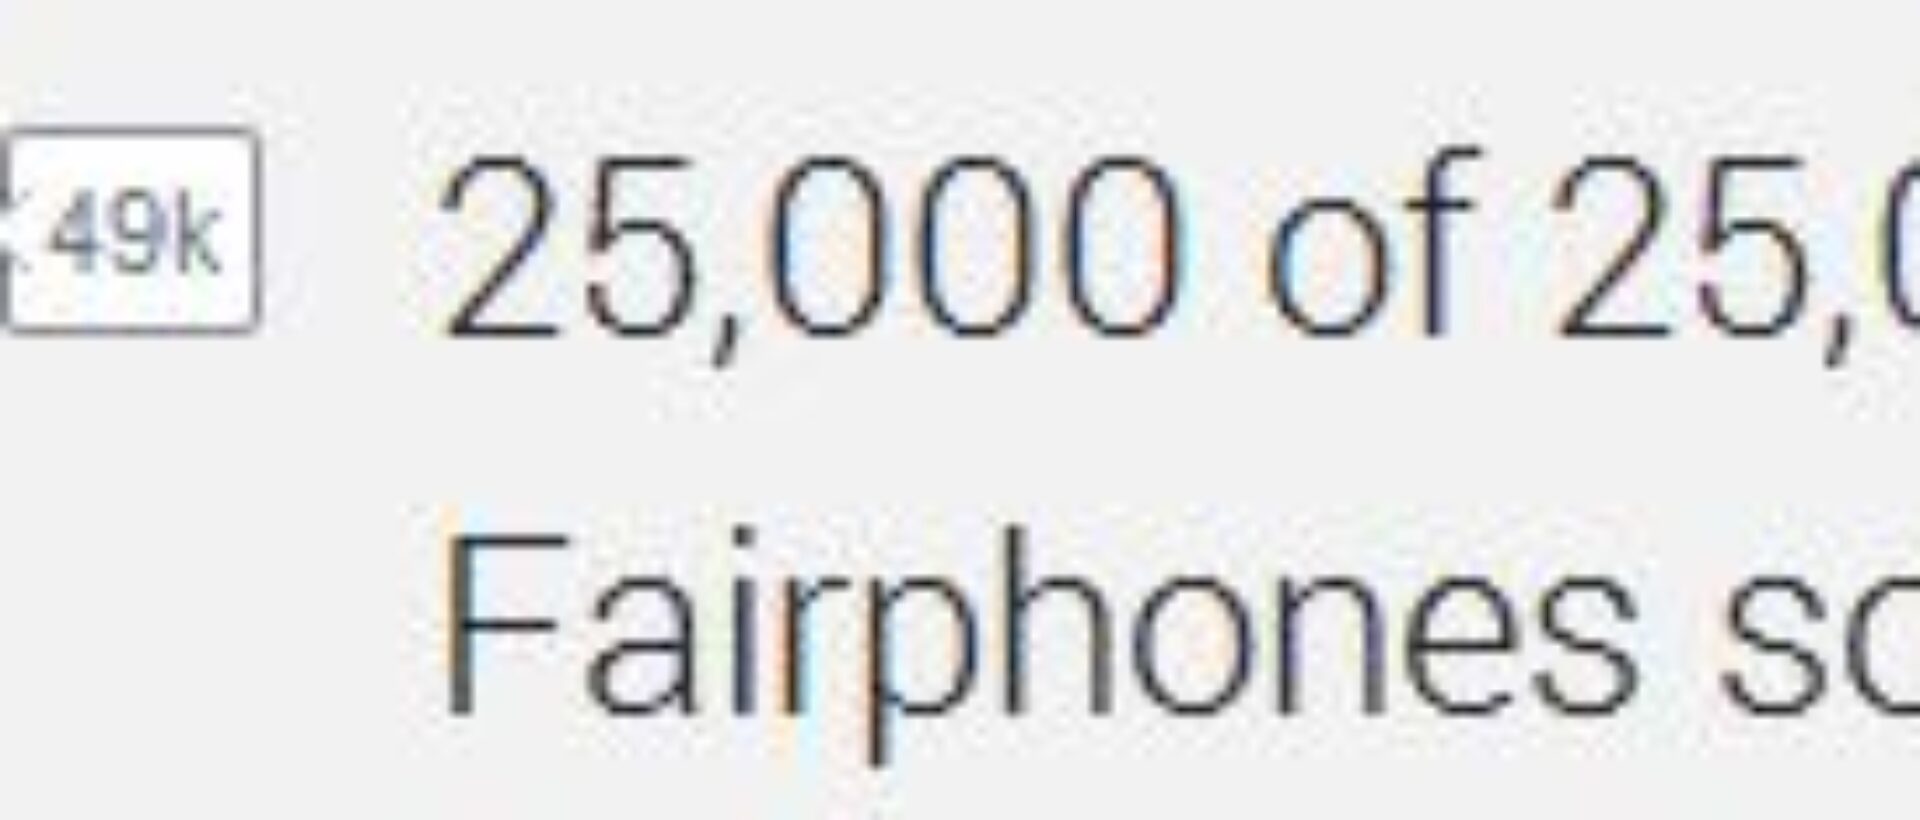 Die ersten 25'000 Fairphones wurden verkauft